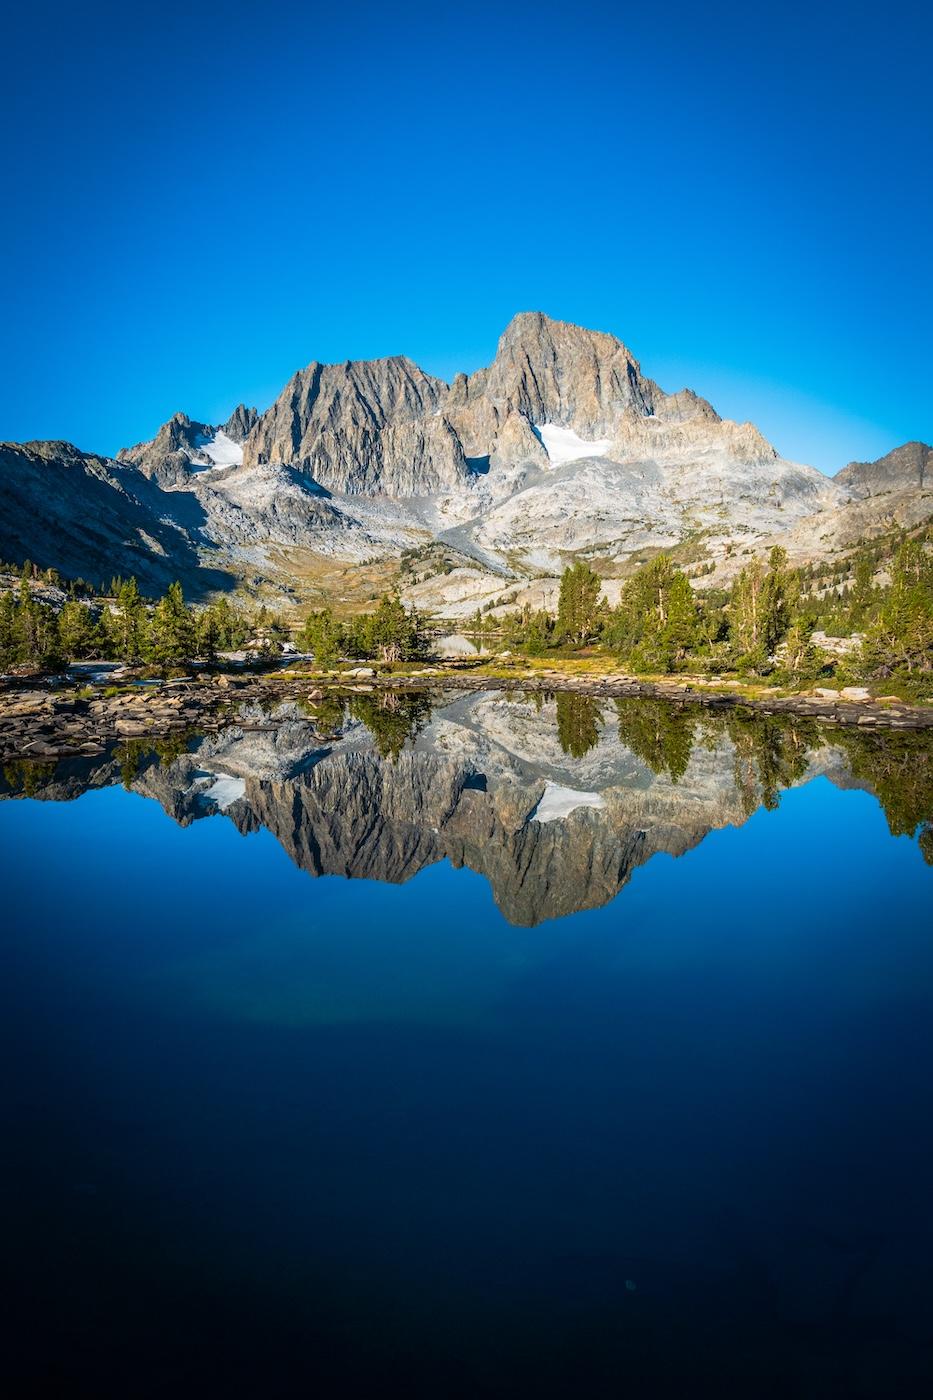 Reflection of Banner Peak in Garnet Lake in the Sierras